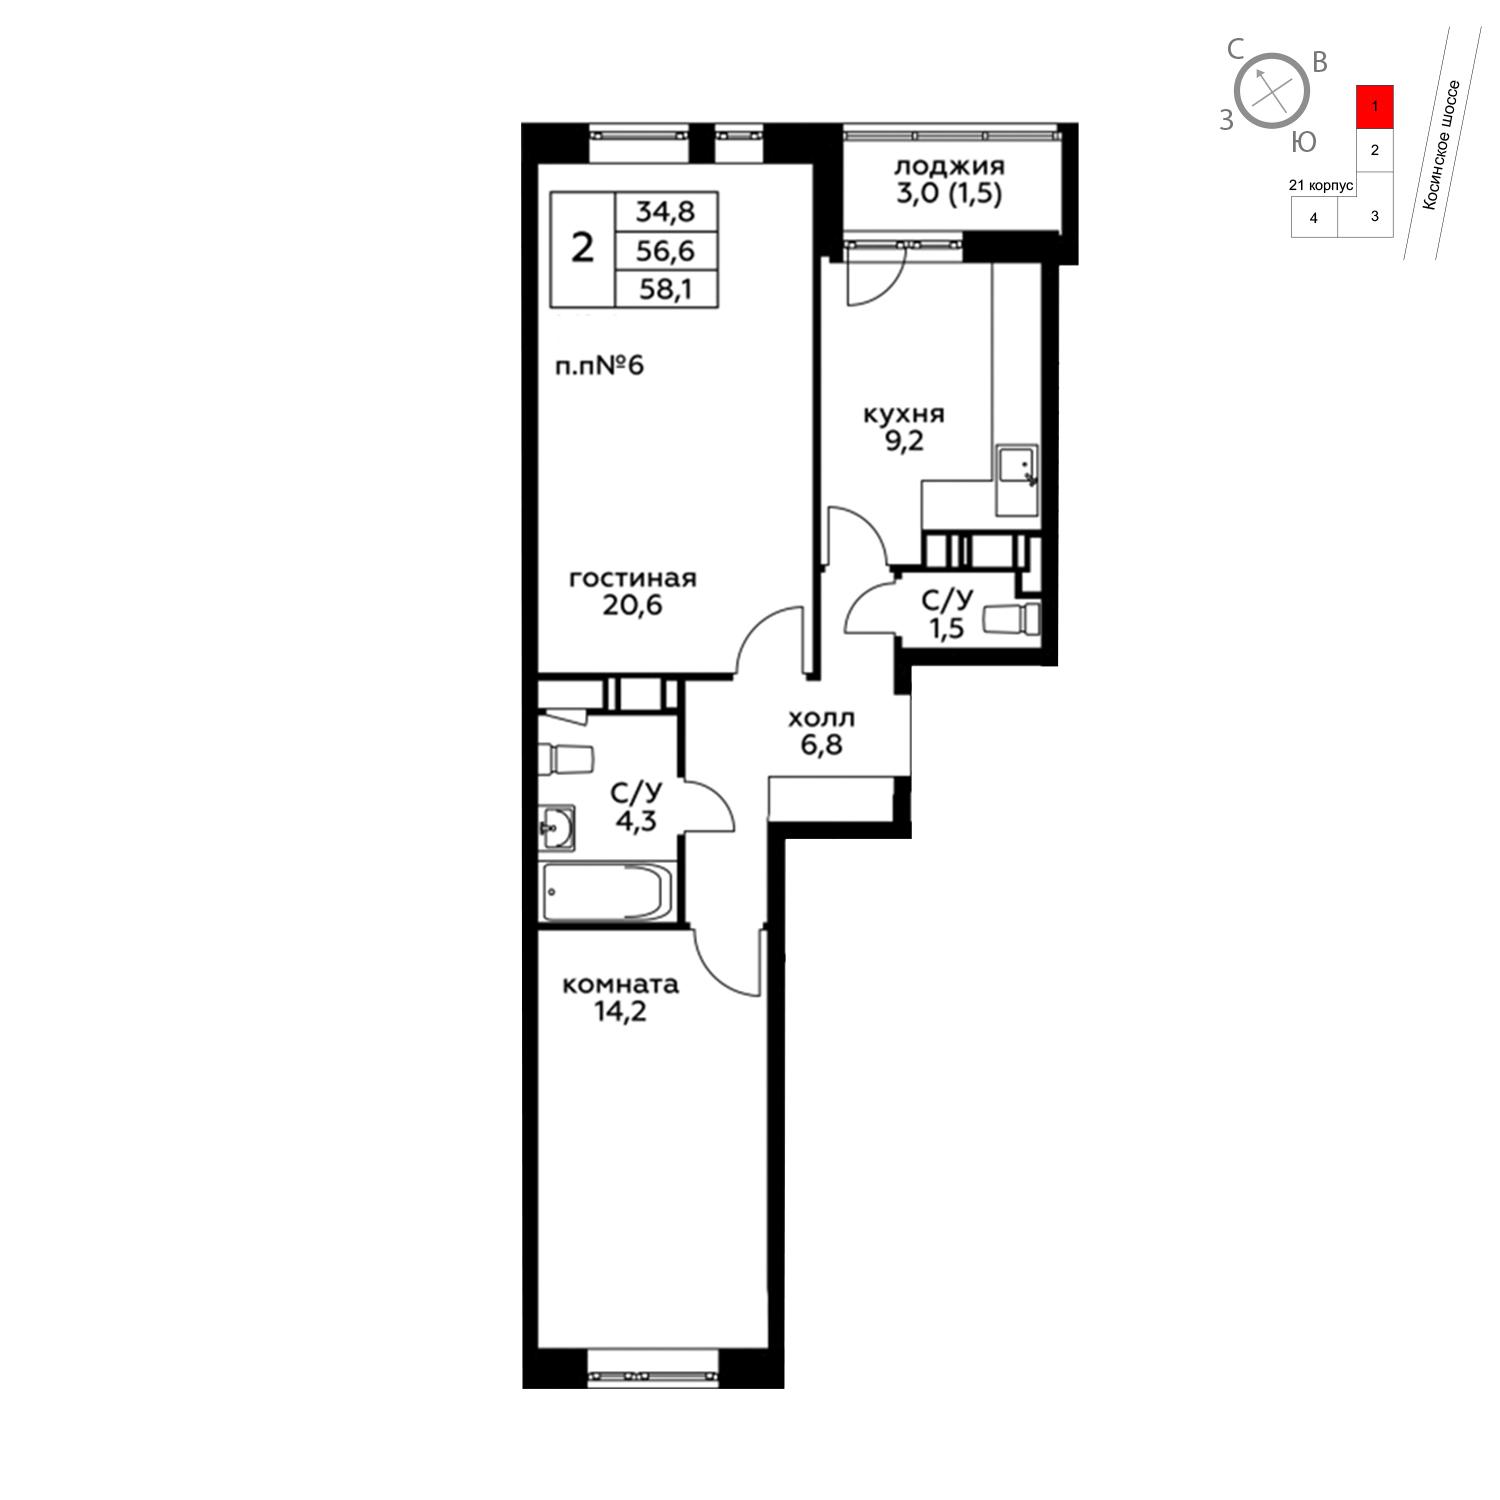 Продаётся 2-комнатная квартира в новостройке 58.1 кв.м. этаж 13/20 за 6 539 155 руб 